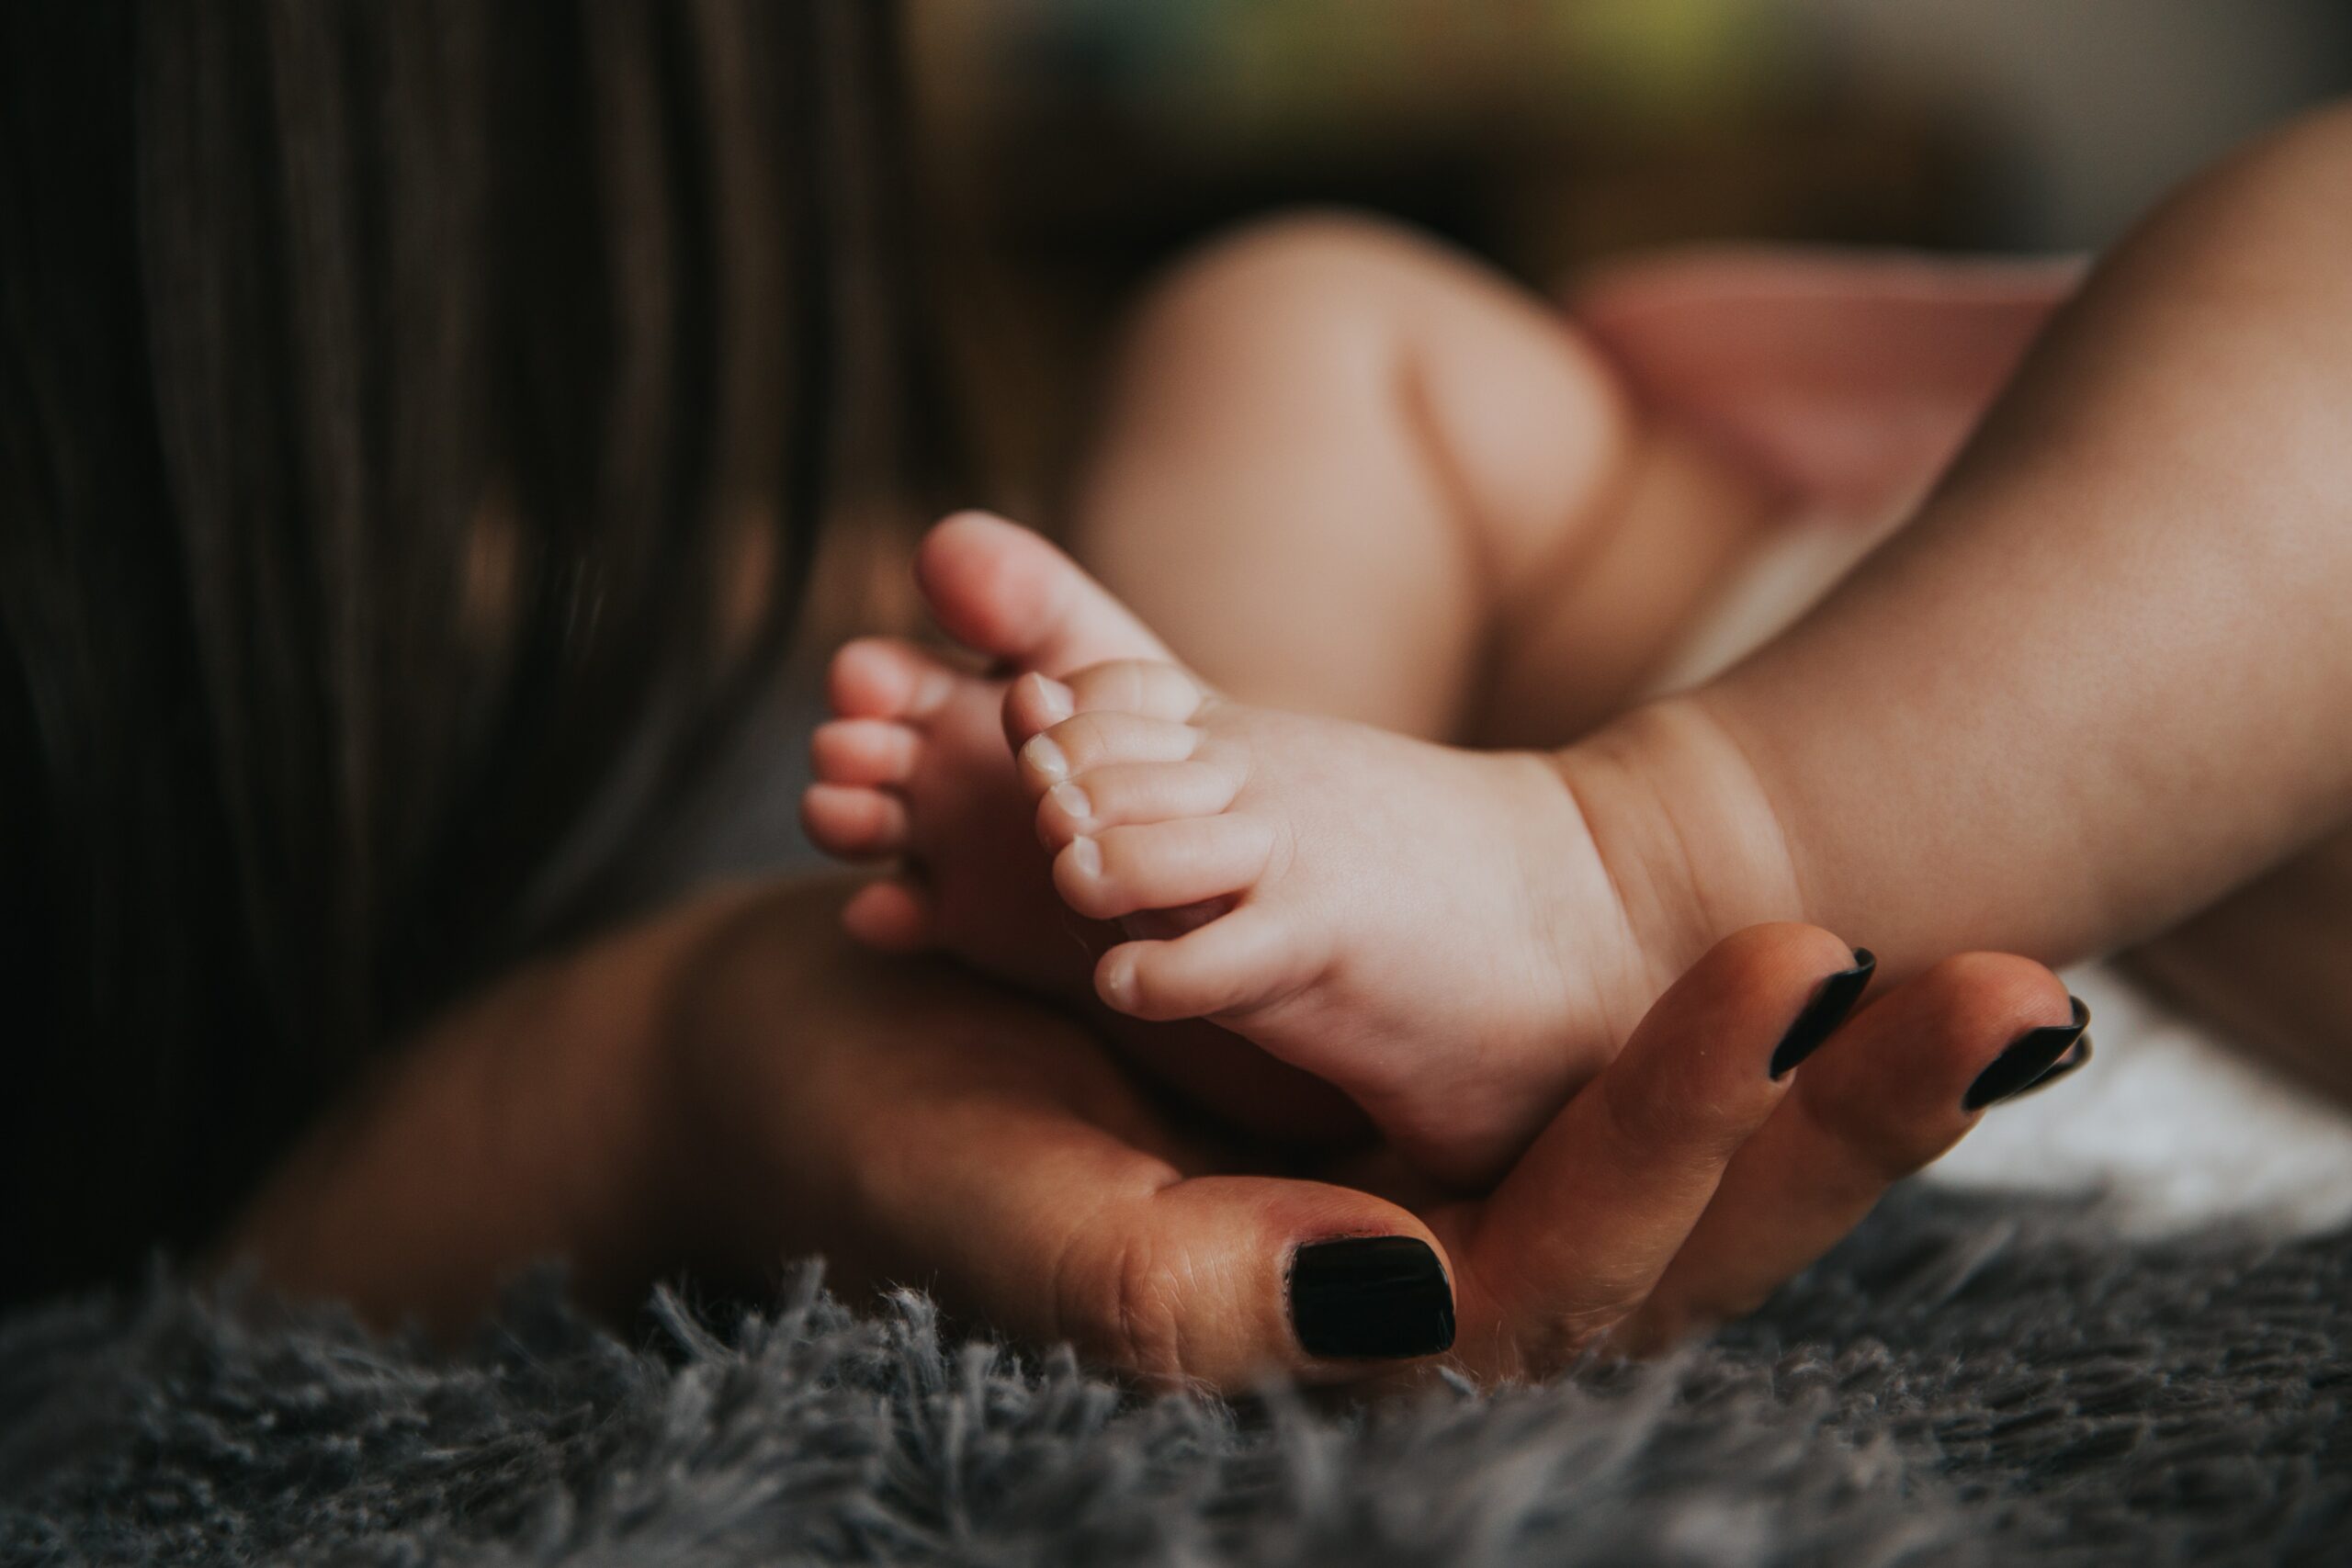 Essere madre oggi: dal baby blues alla teoria del “good enough”